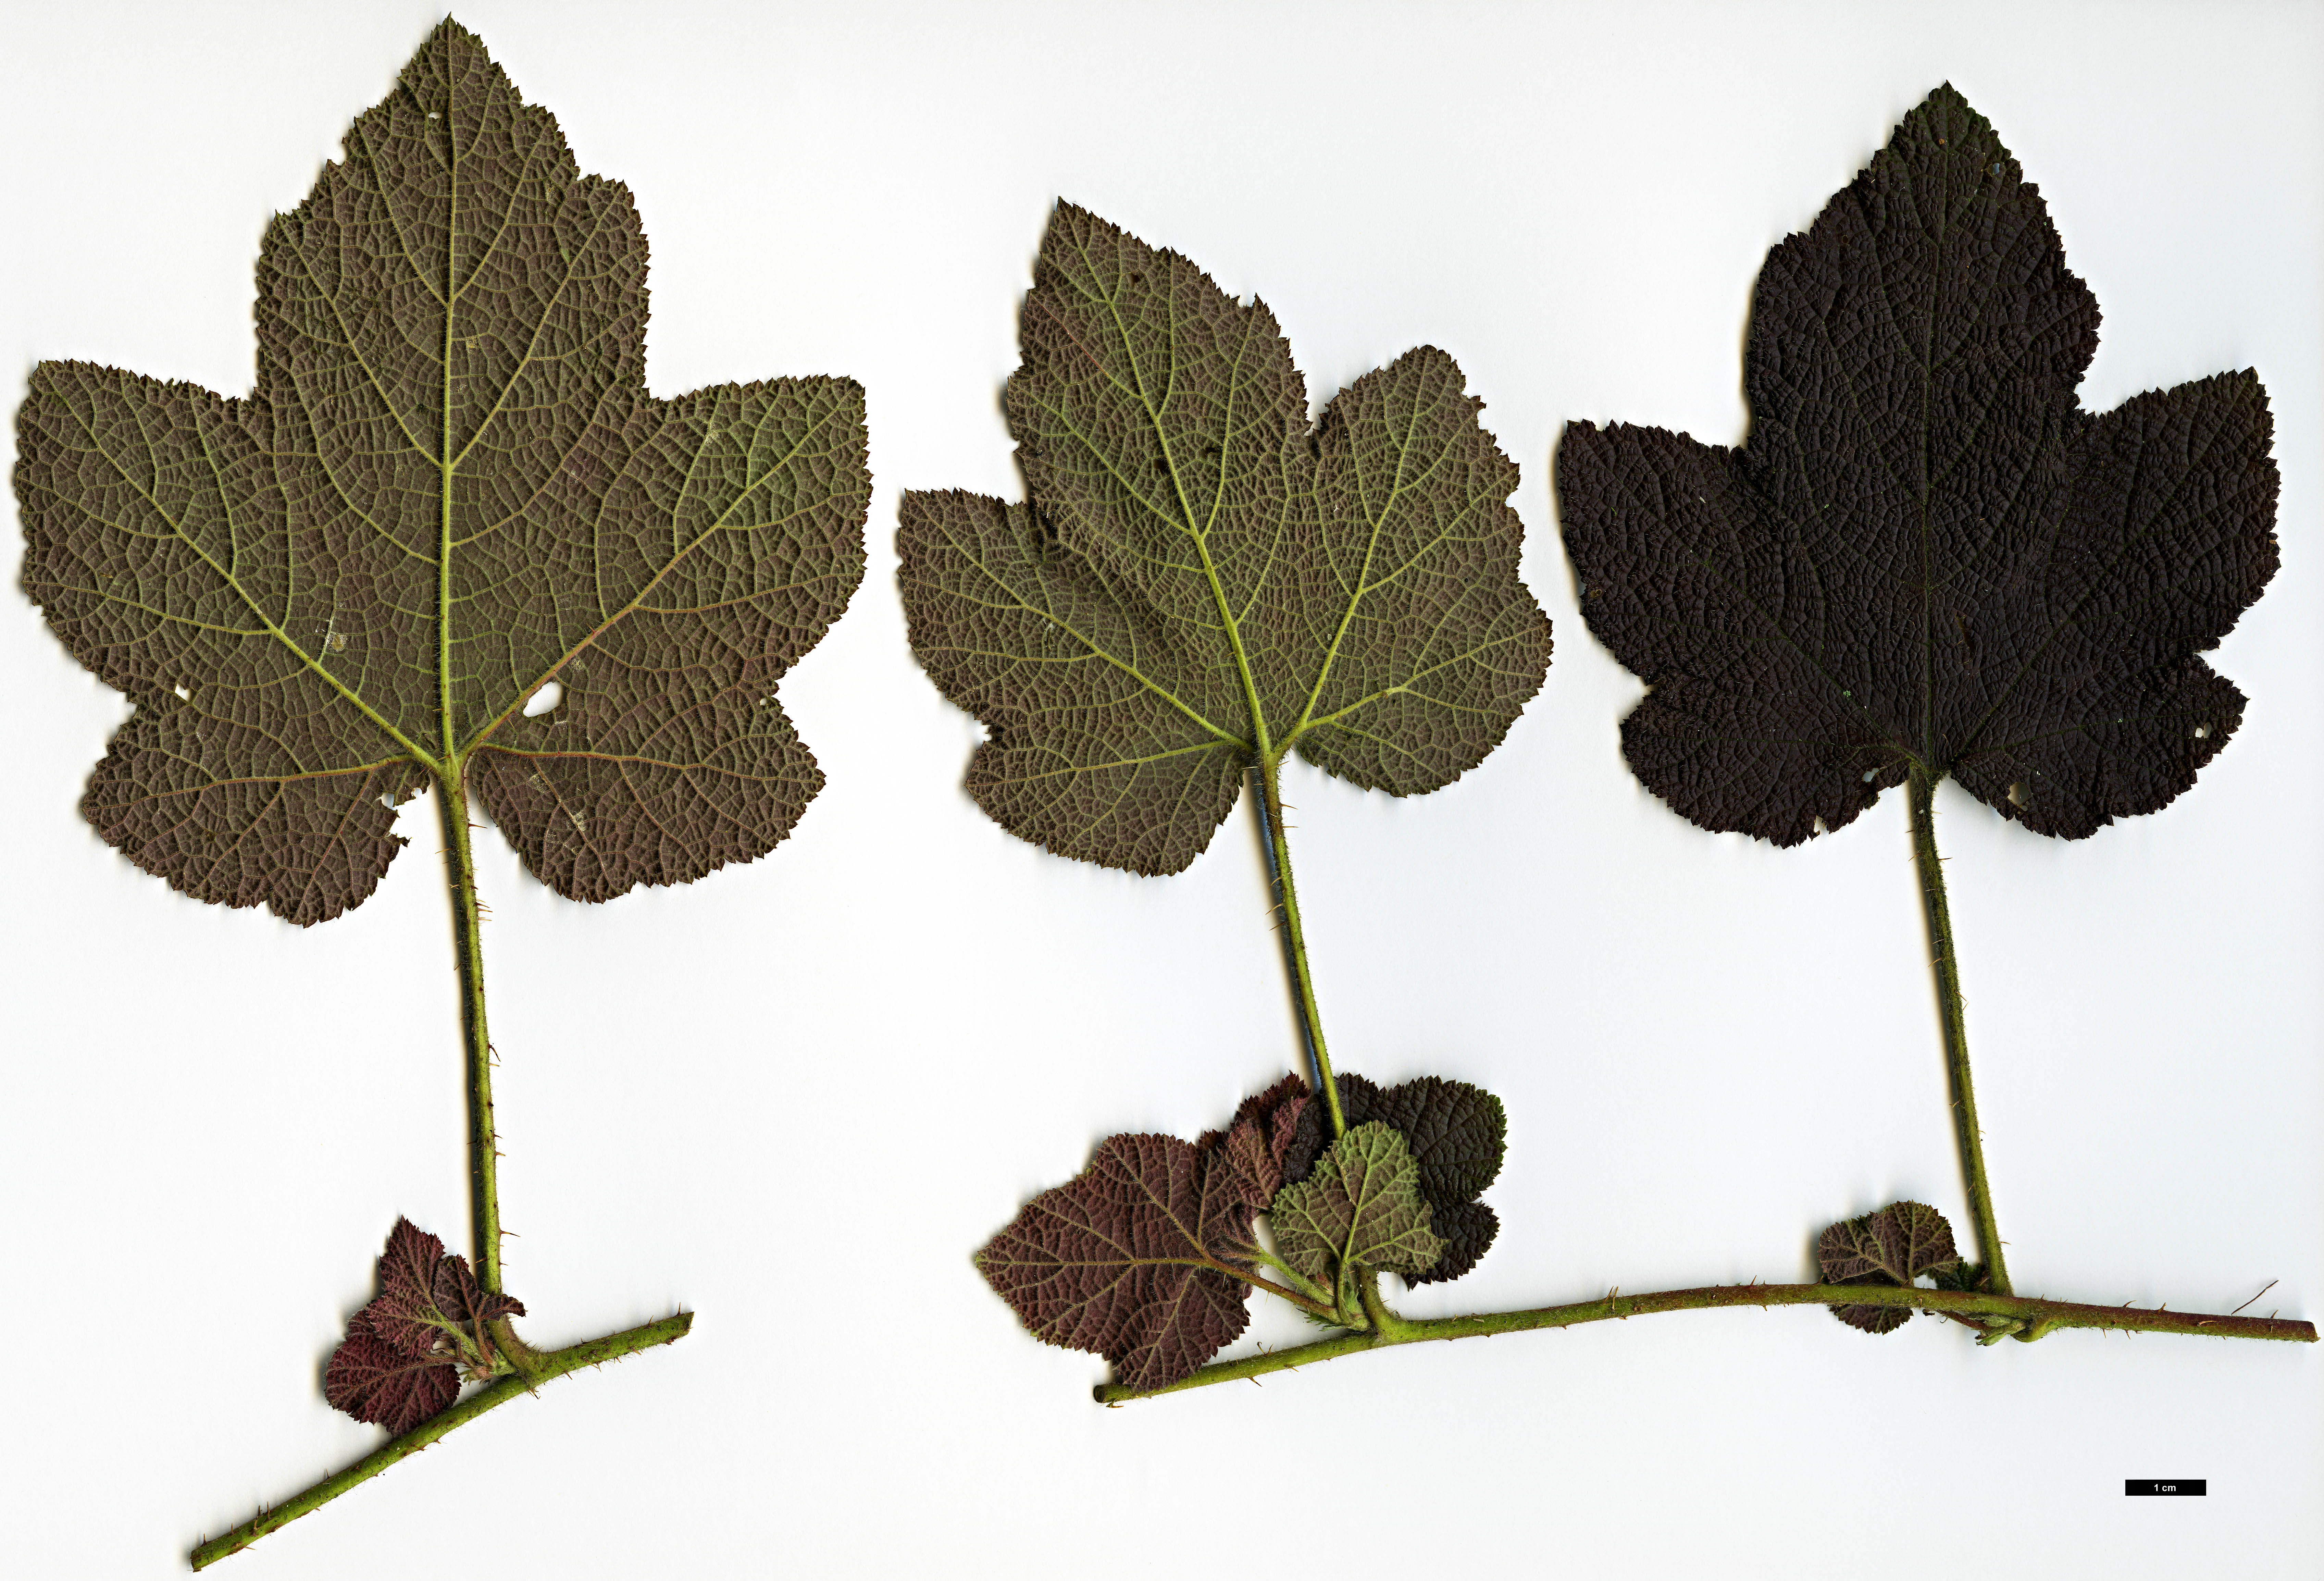 High resolution image: Family: Rosaceae - Genus: Rubus - Taxon: alceifolius - SpeciesSub: var. purpurascens